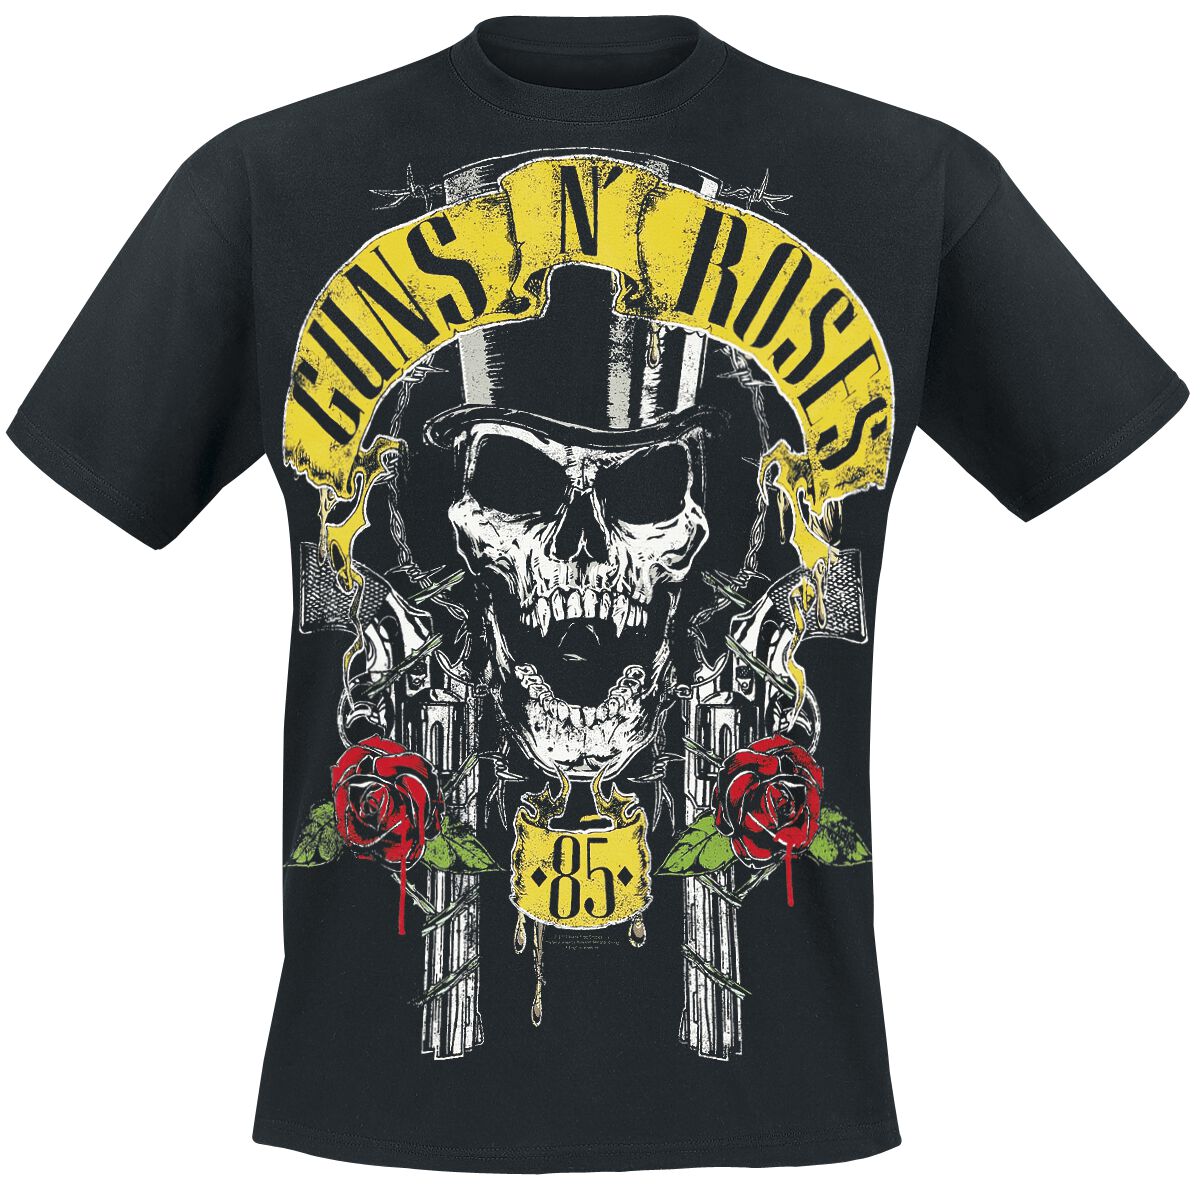 Guns N' Roses T-Shirt - Top Hat - S bis 5XL - für Männer - Größe 5XL - schwarz  - Lizenziertes Merchandise! von Guns N' Roses